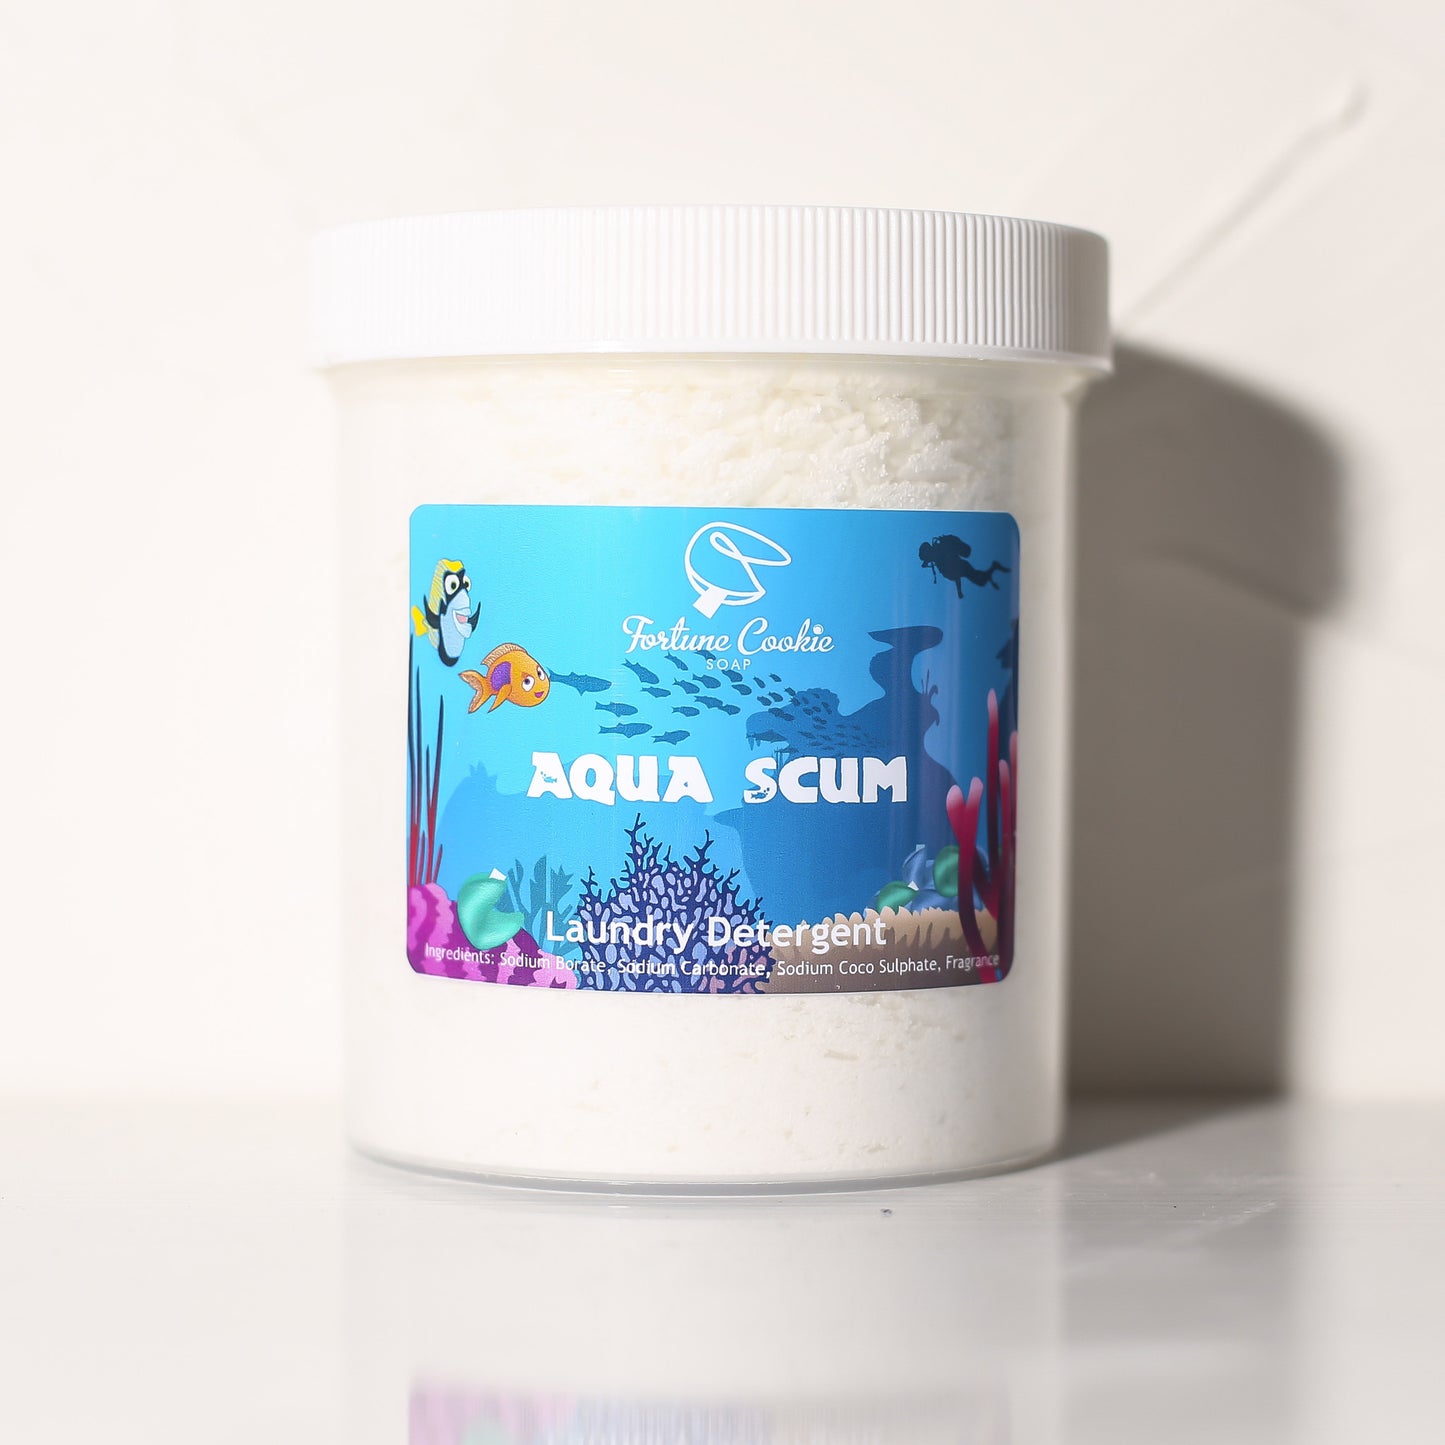 AQUA SCUM Laundry Detergent - Fortune Cookie Soap - 1